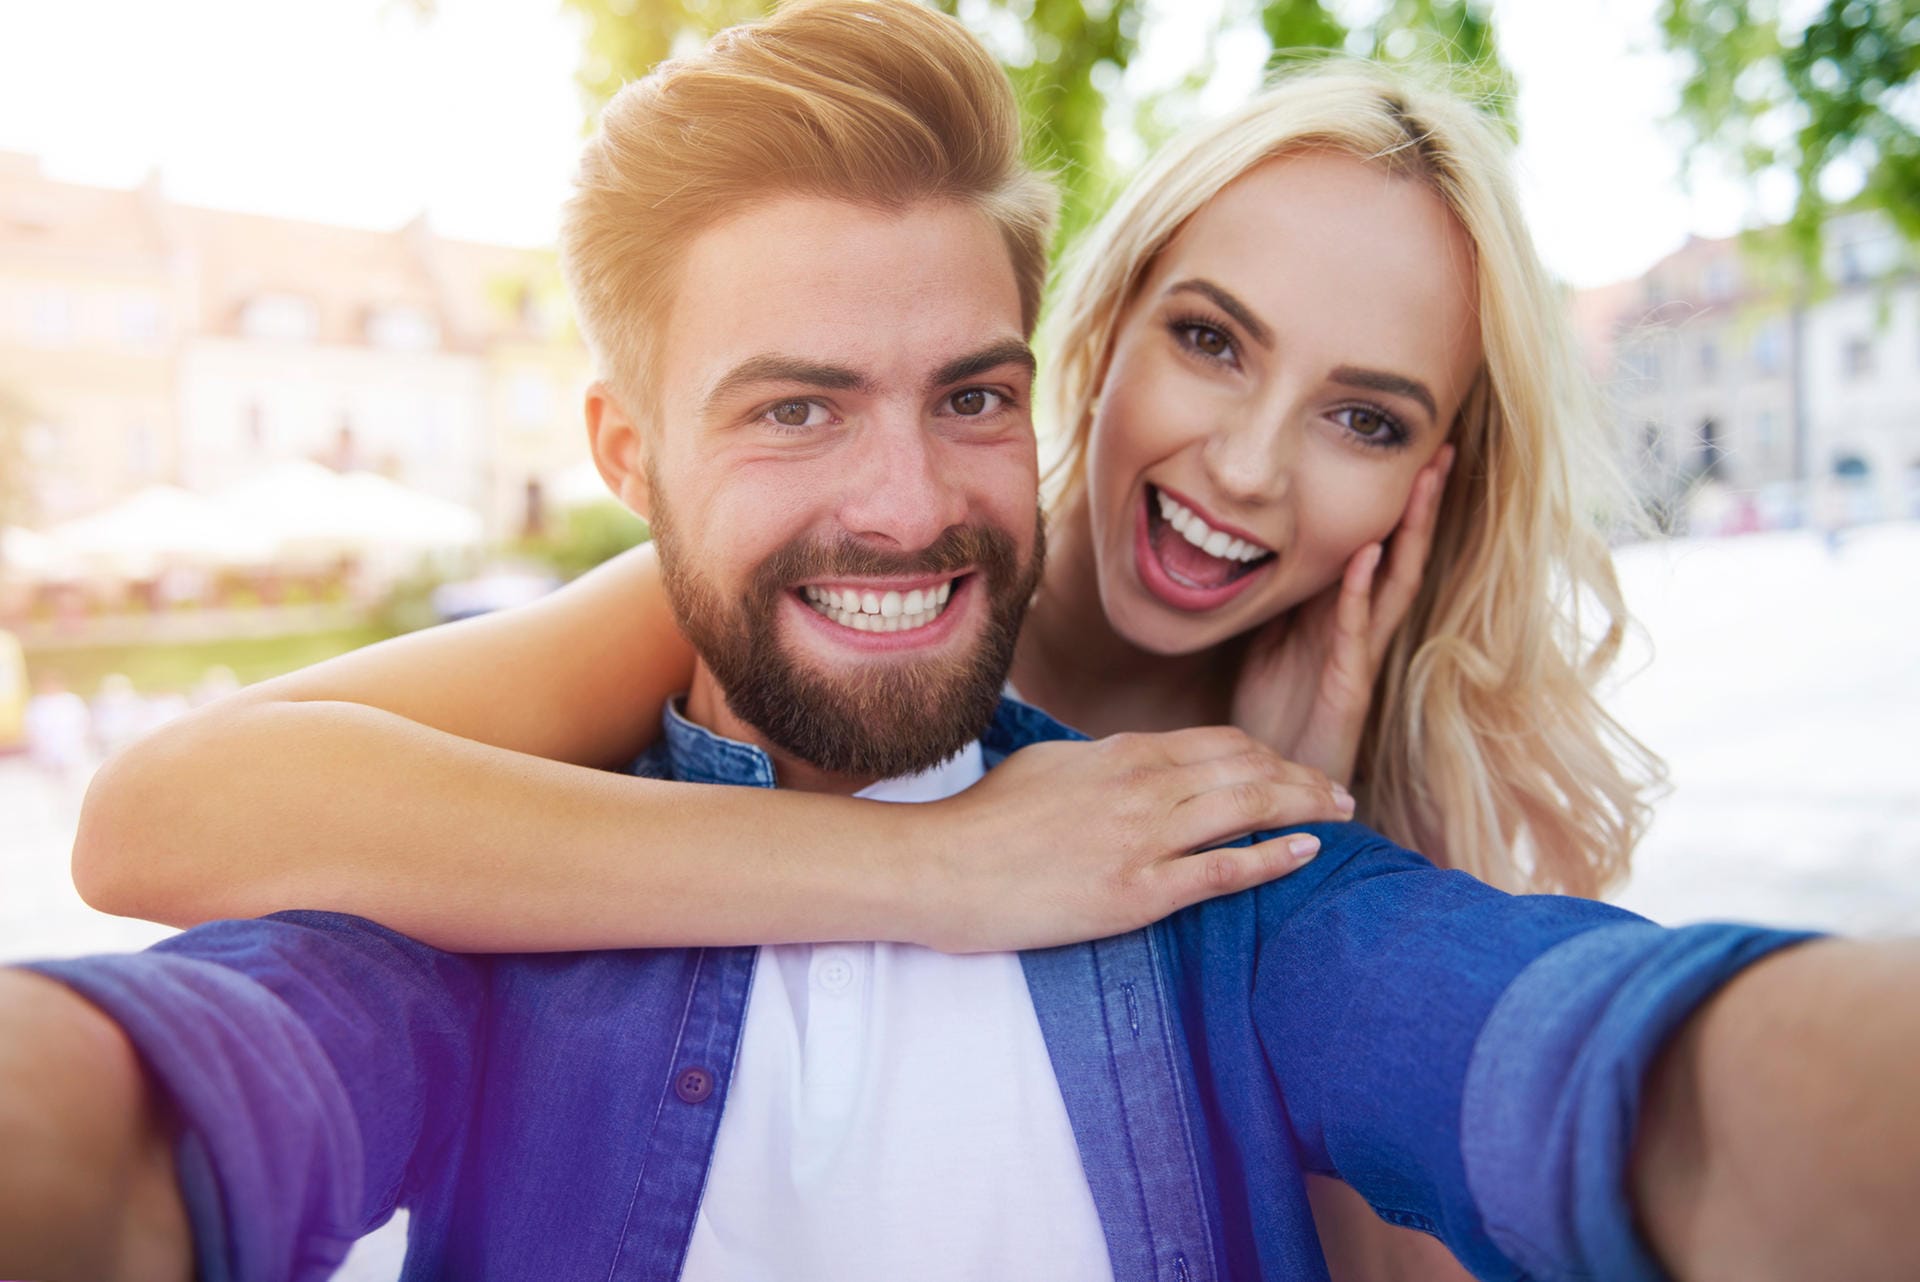 91 Prozent der Single-Frauen wünschen sich einen humorvollen Partner, berichtet ElitePartner.de.